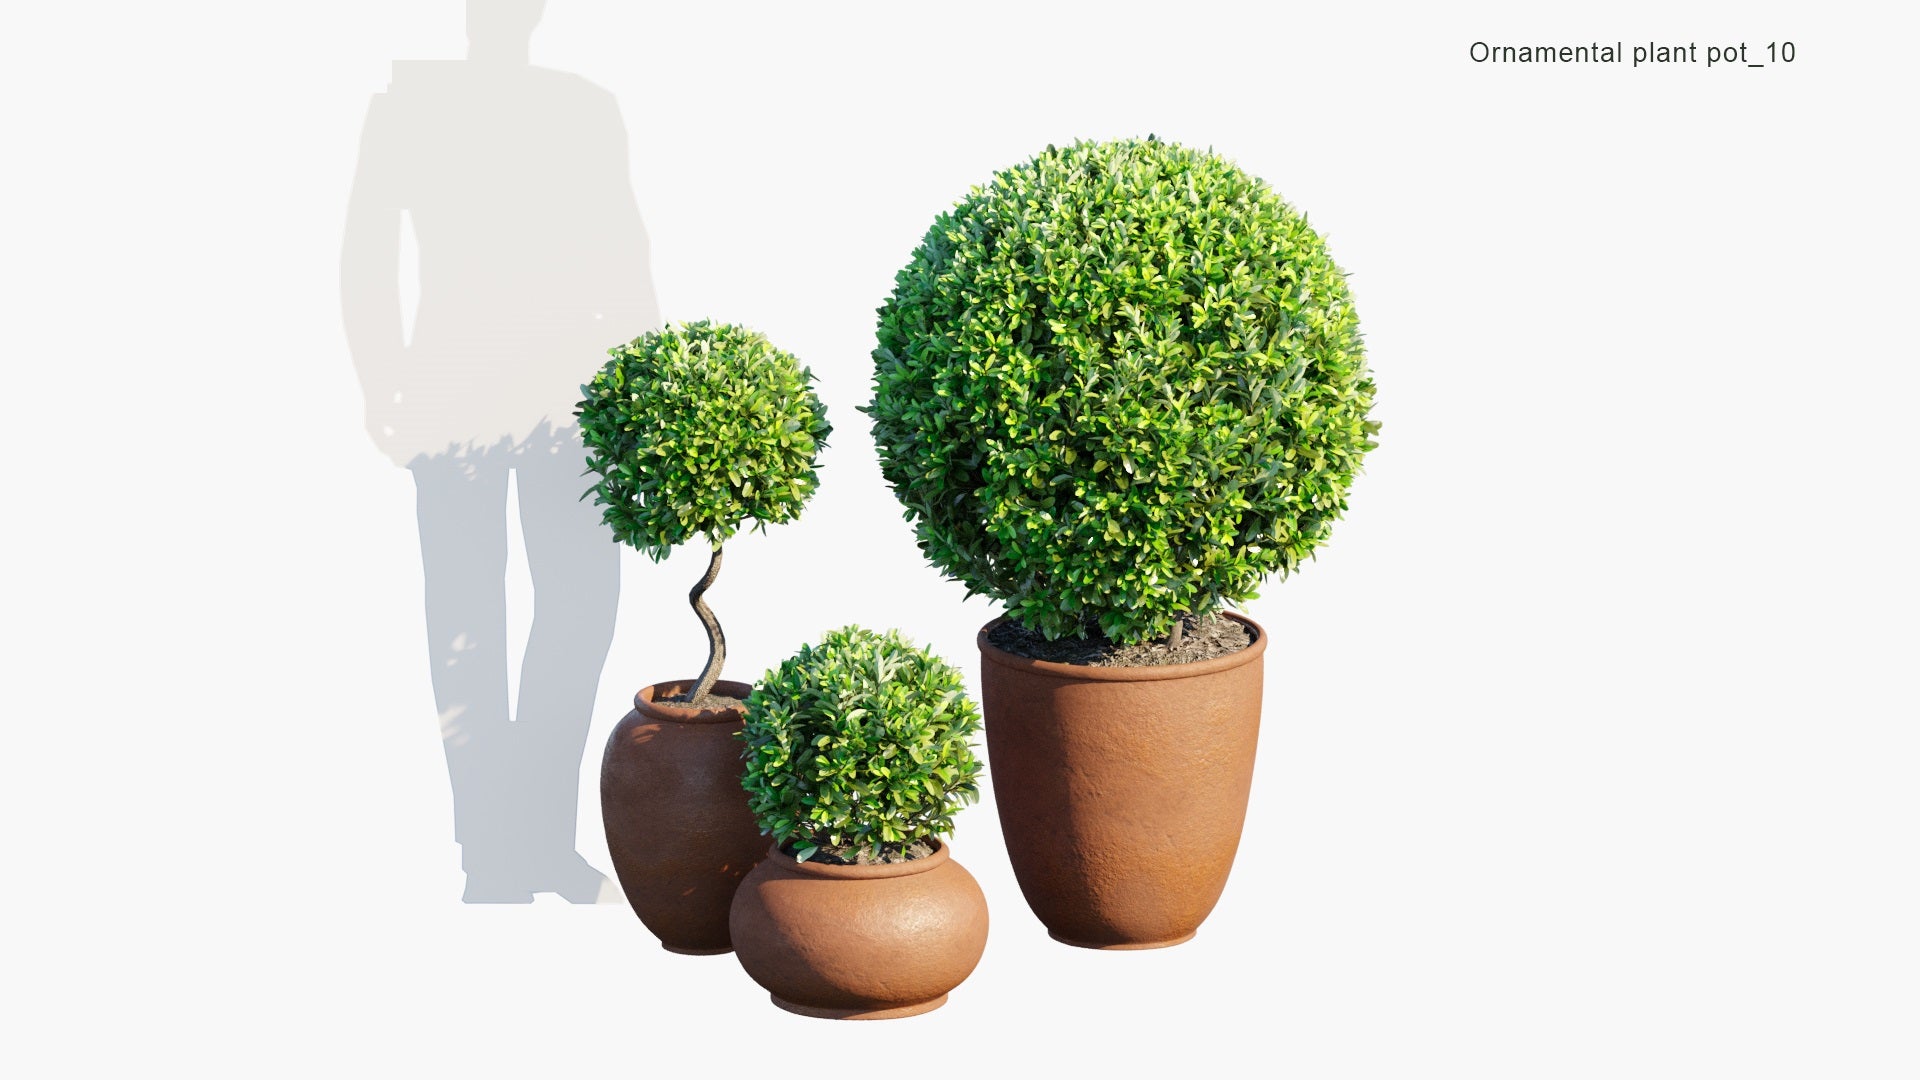 Ornamental Pot Plant 10 - Laurus Nobilis 'Saratoga' (3D Model)